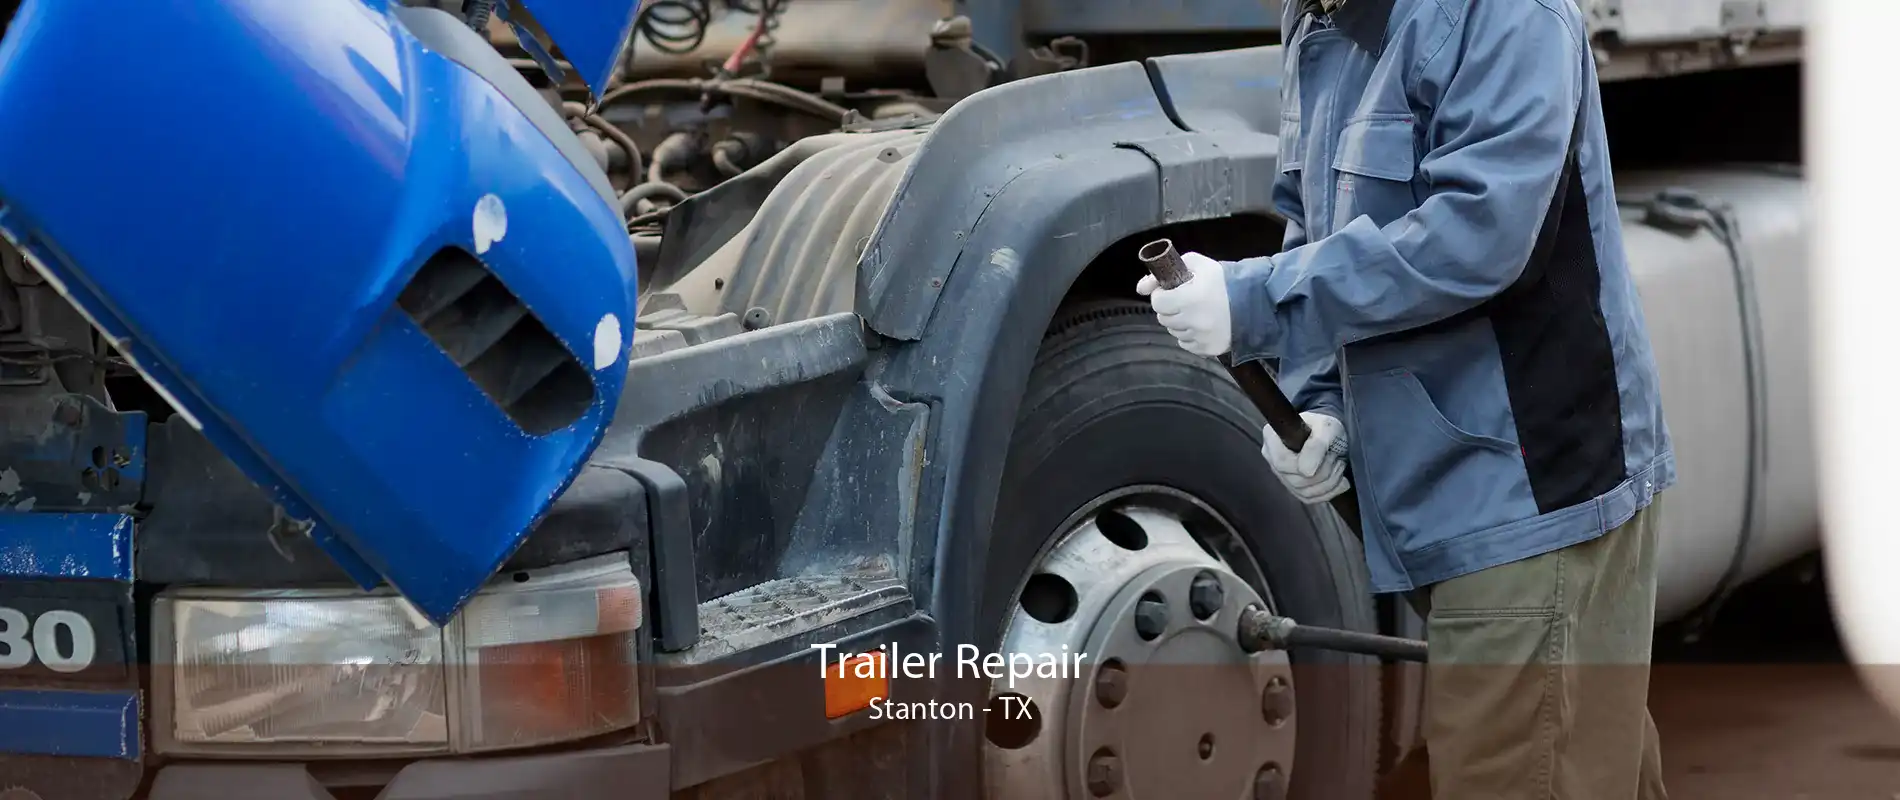 Trailer Repair Stanton - TX